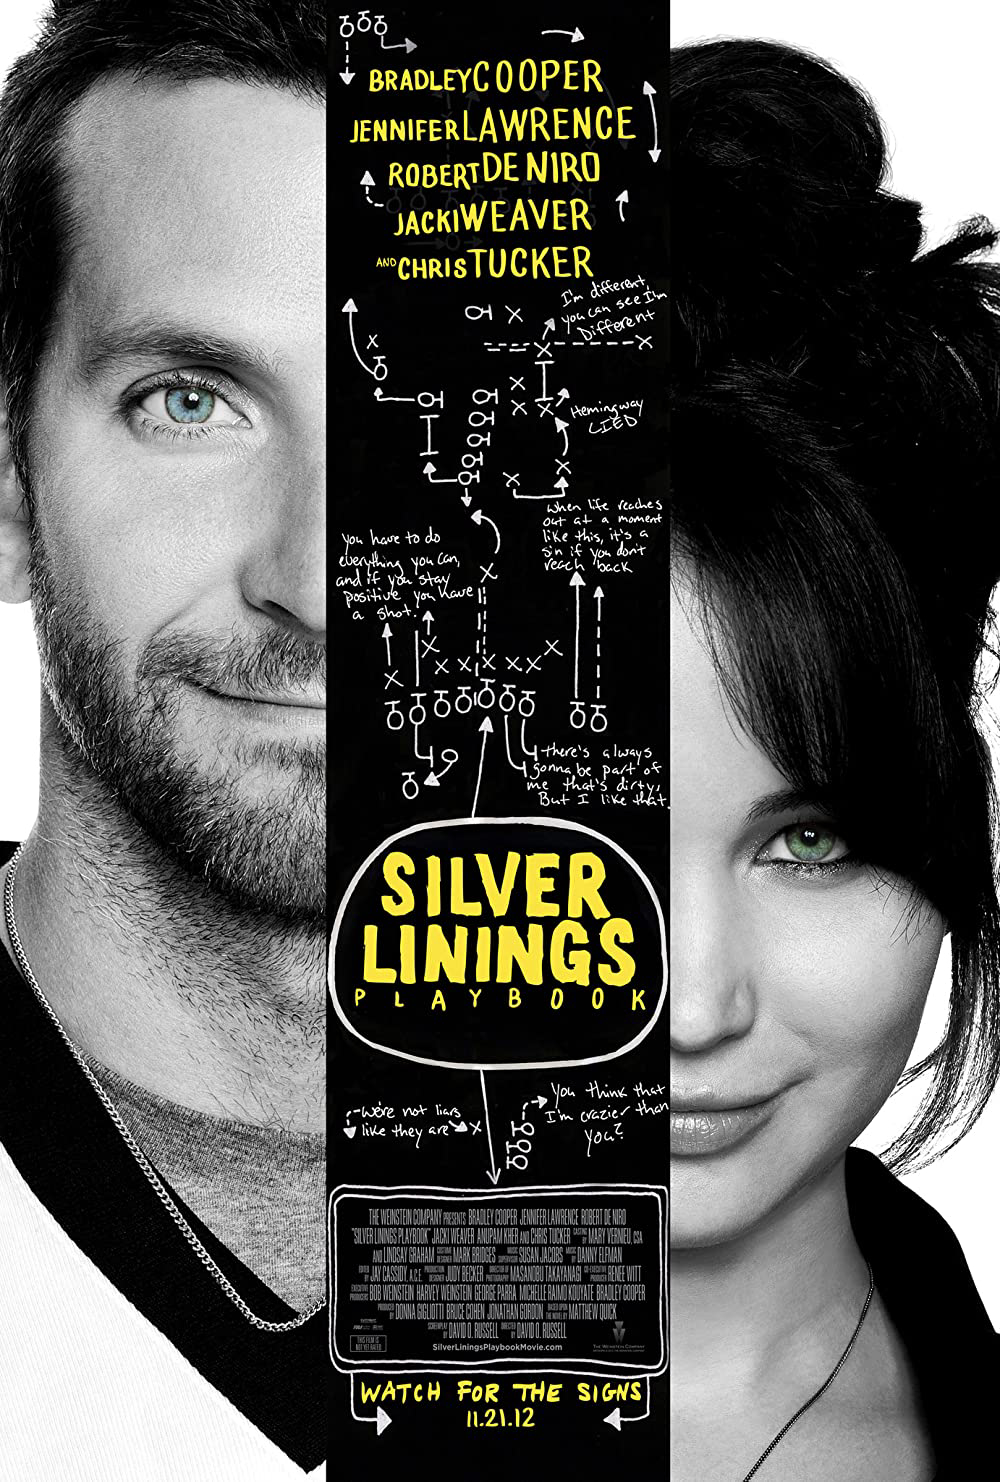 Poster Phim Tình Yêu Tìm Lại (Silver Linings Playbook)